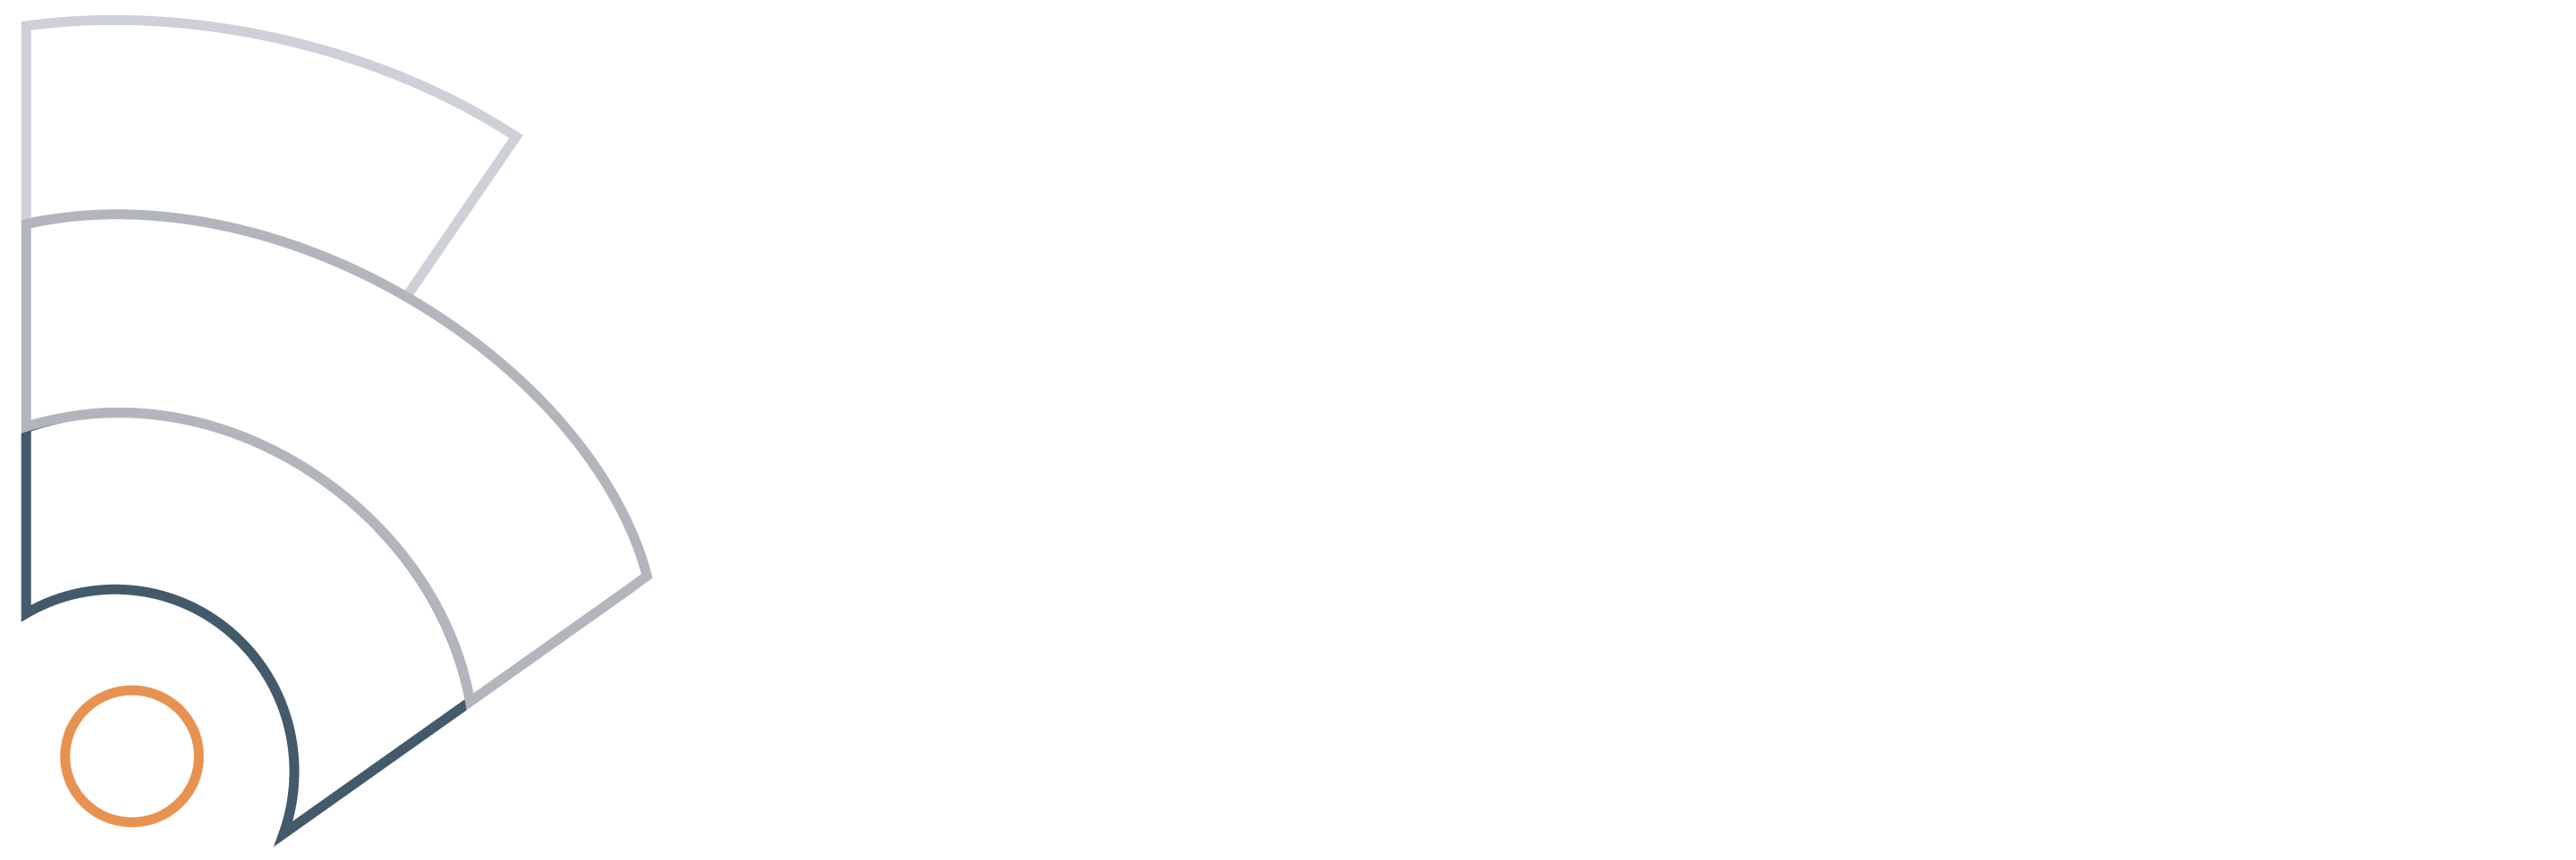 Burroughs Tech Services